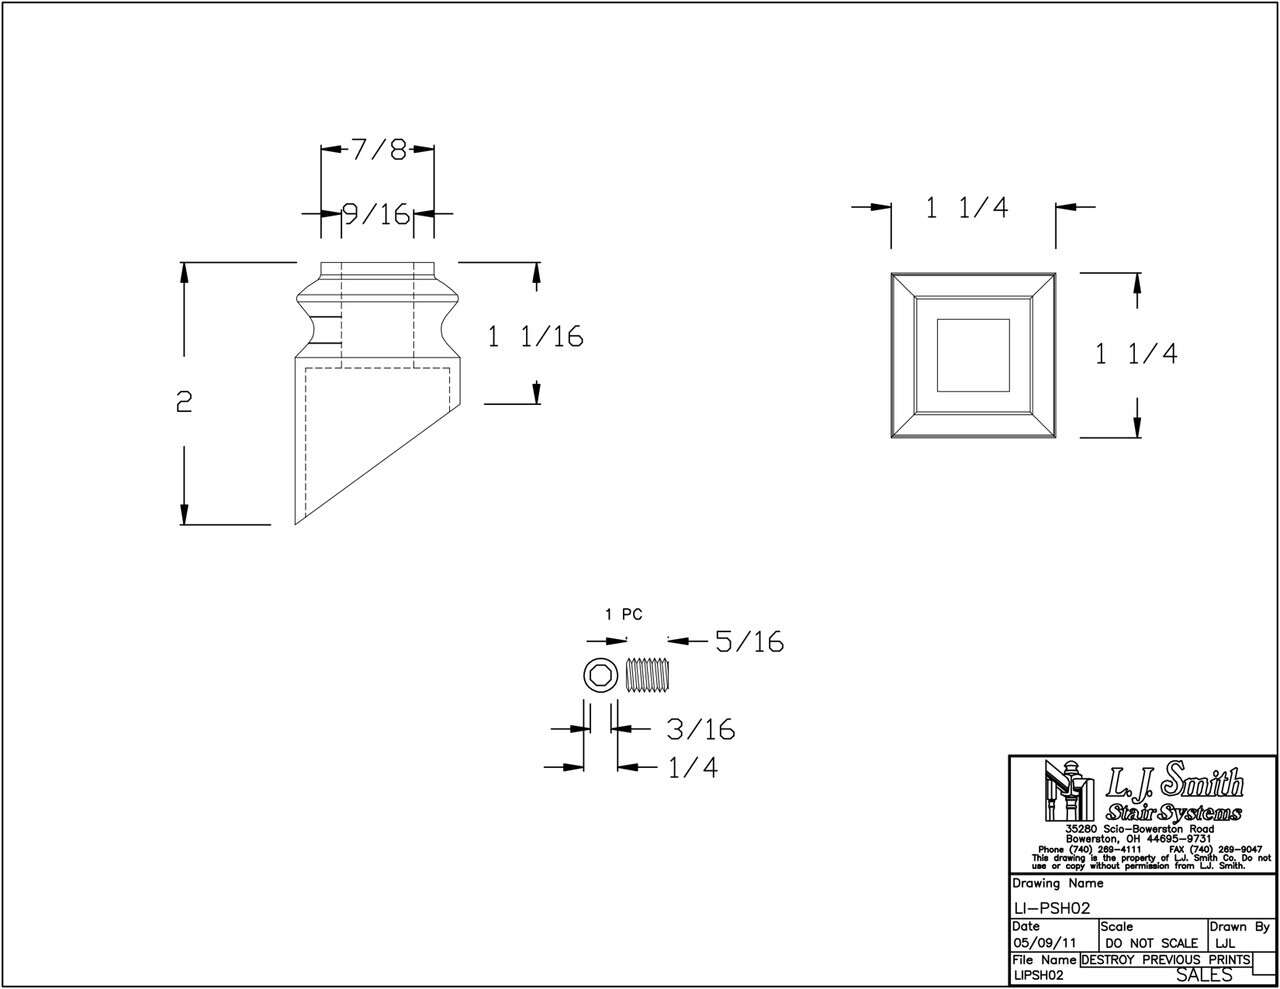 LI-PSH02 — Pitch Shoe 1/2" Square Iron Balusters